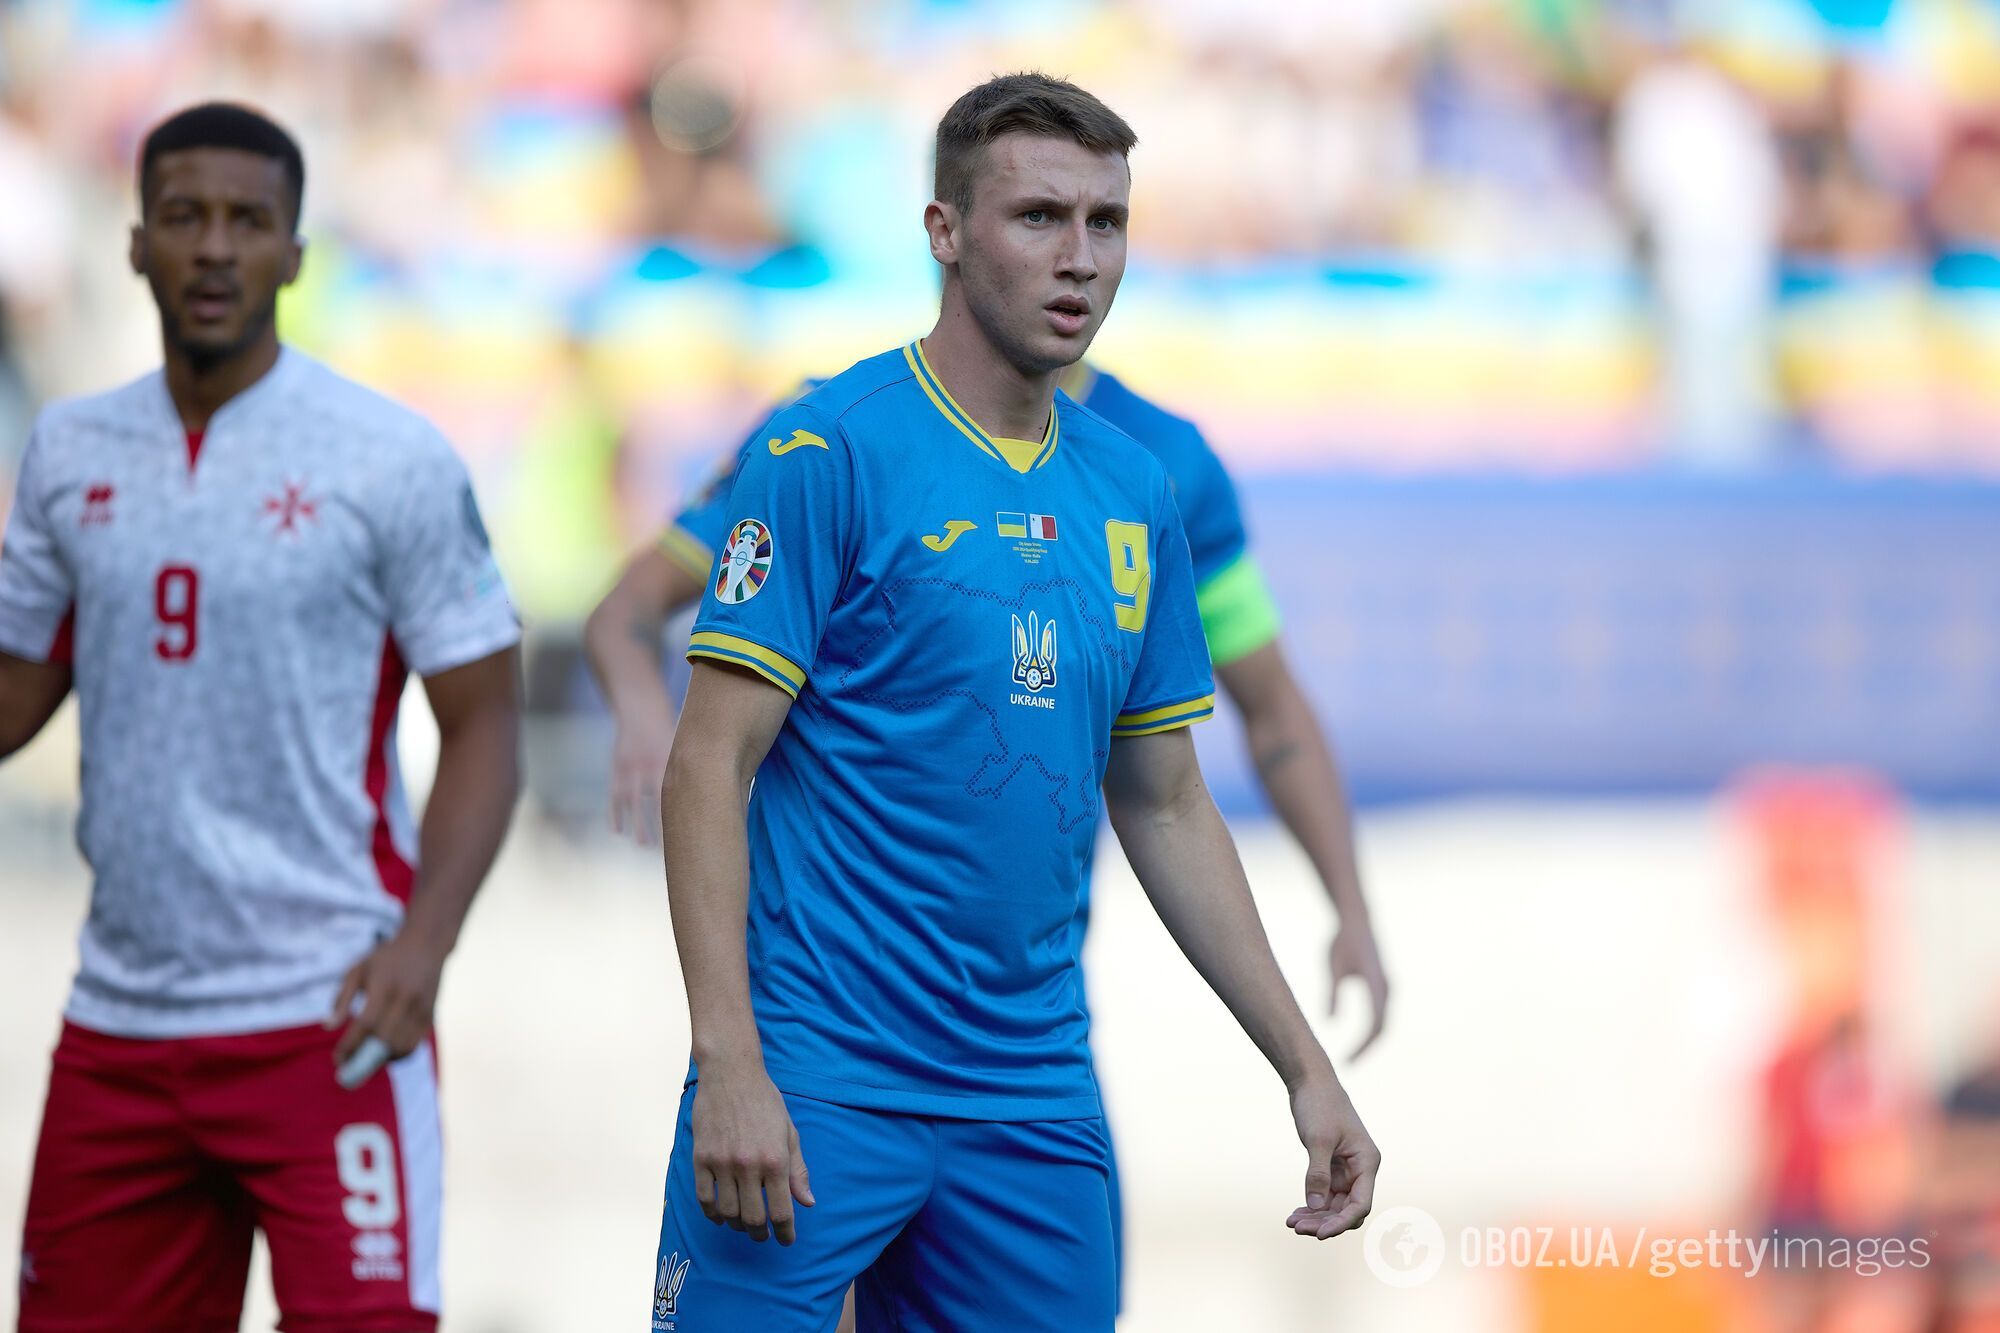 УЕФА дисквалифицировал лидера сборной Украины на чемпионате Европы по футболу U-21